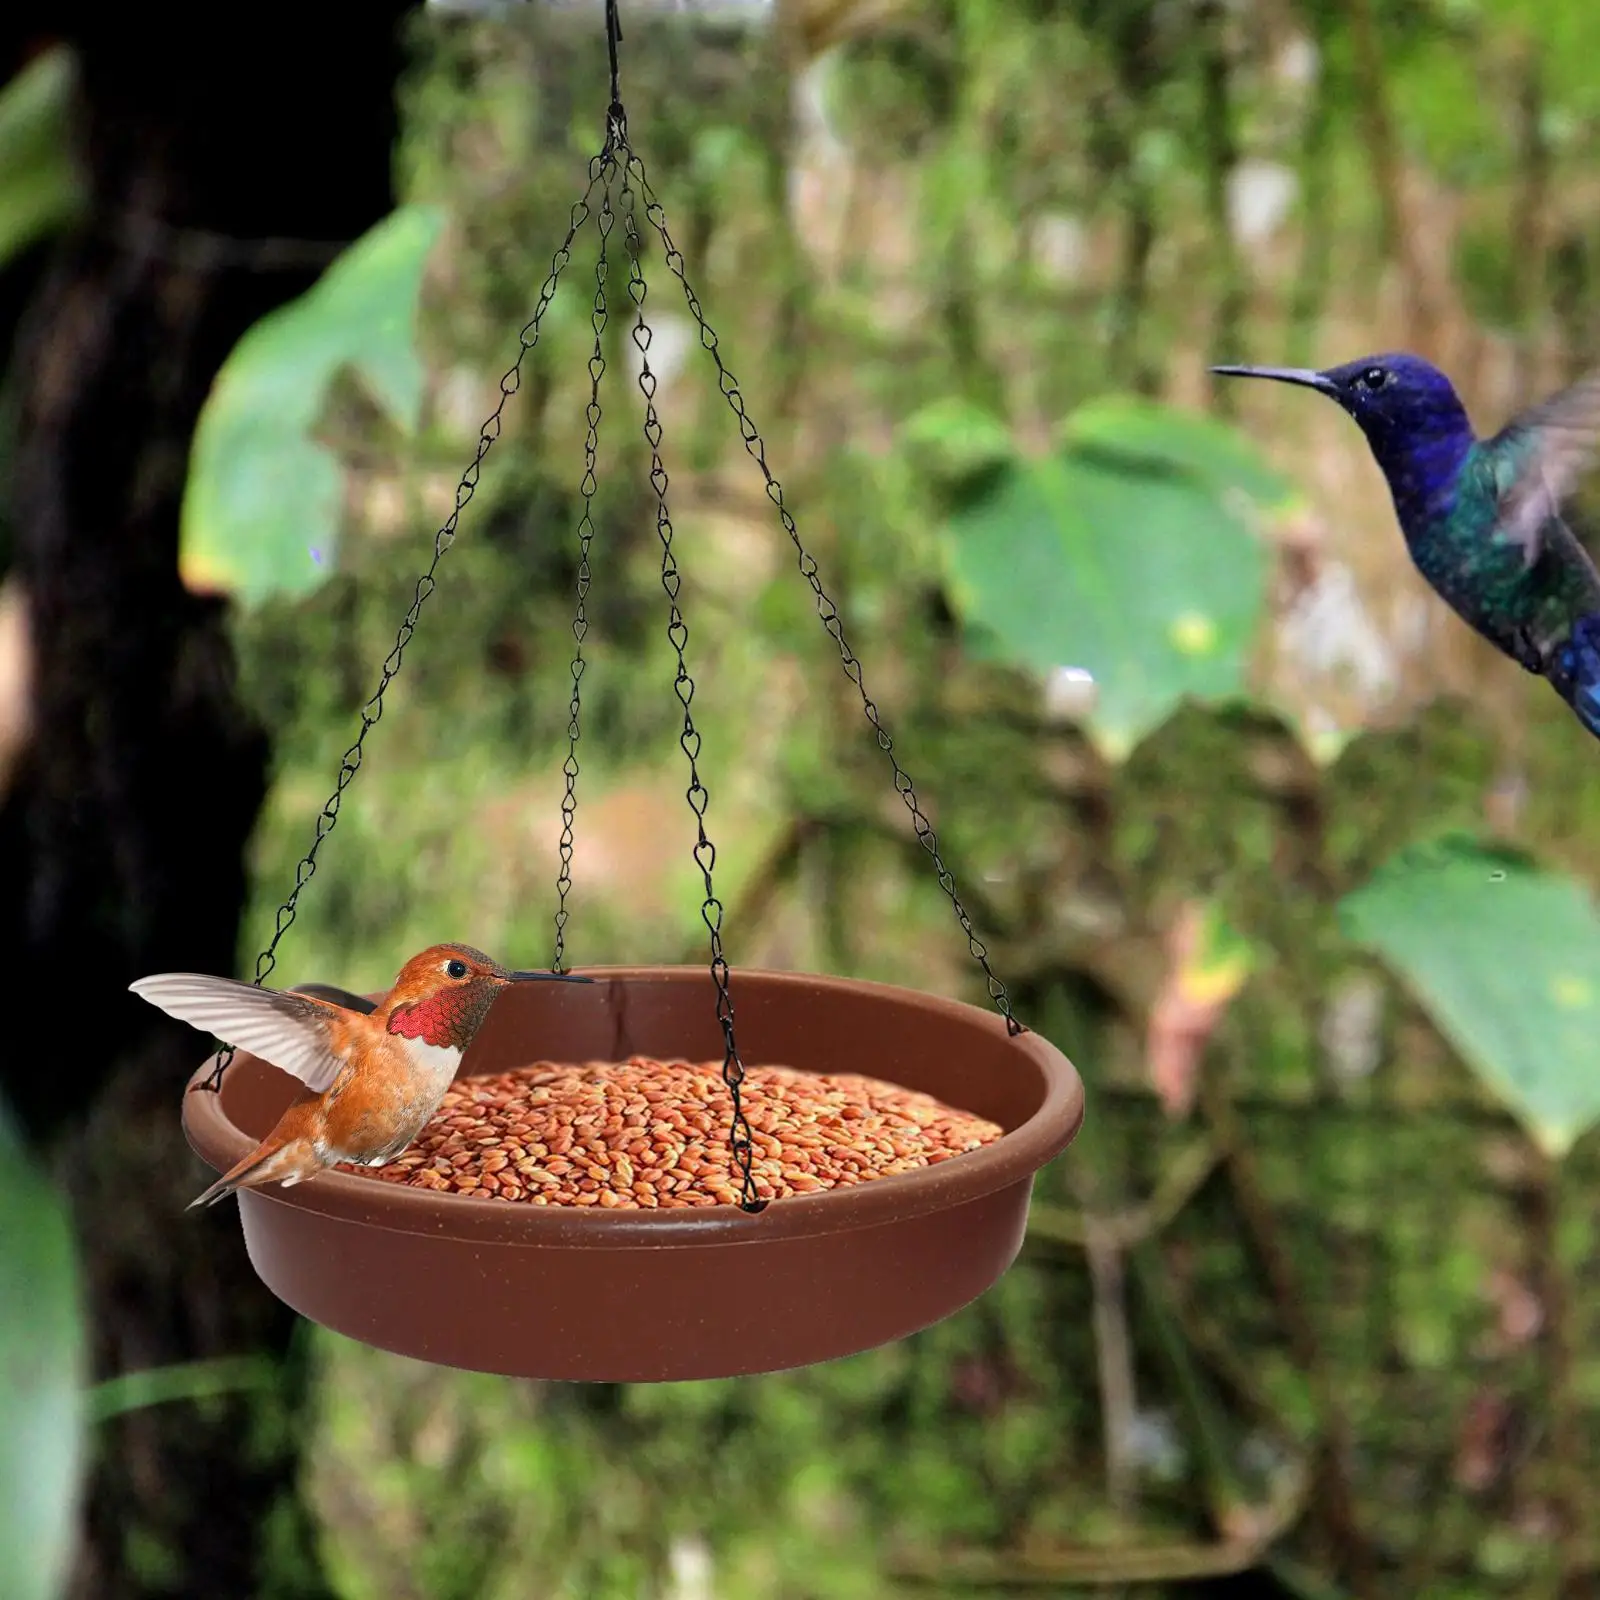 Hanging Bird Feeding Dish Bird Water Bowl